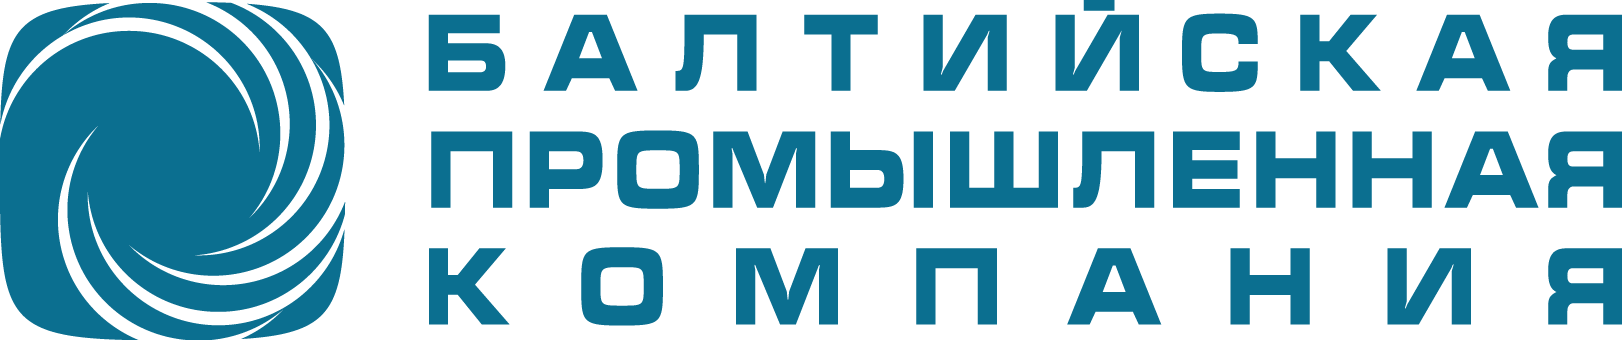 logo_BPC.png